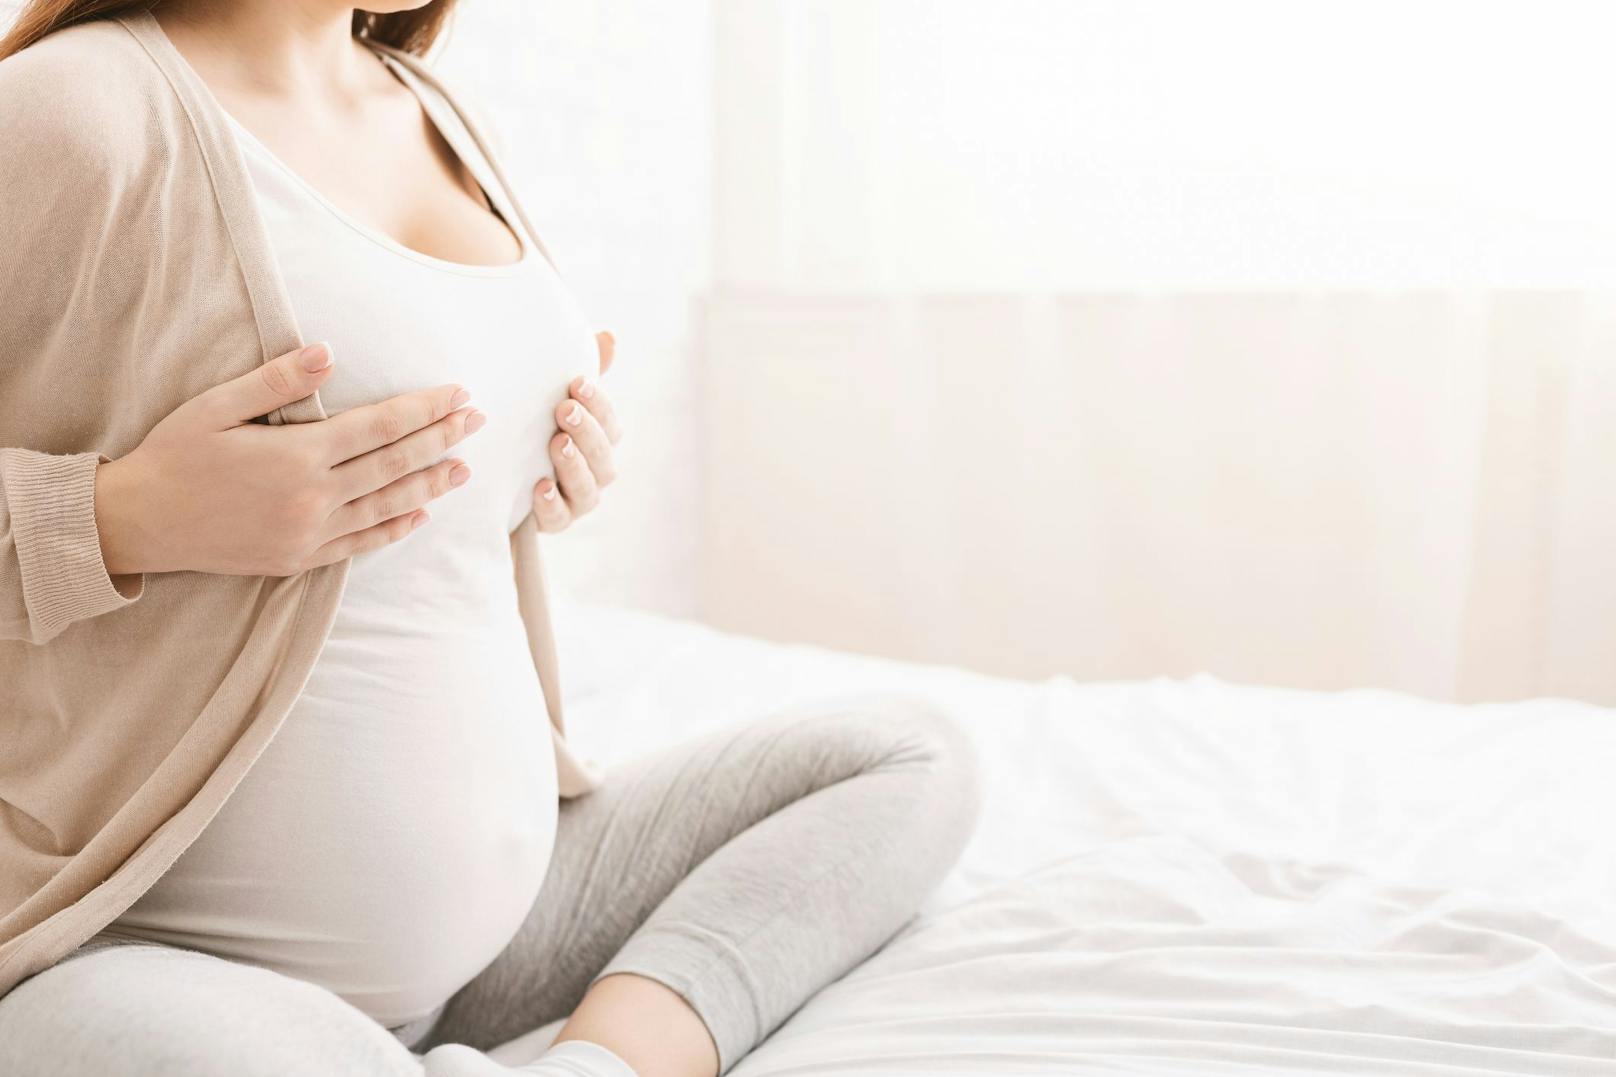 <strong>Schwangerschaft: </strong>Die hormonellen Veränderungen erkannt man als erstes am Wachstum der Brüste. Die Dehnung des Gewebes kann einen Juckreiz auslösen.